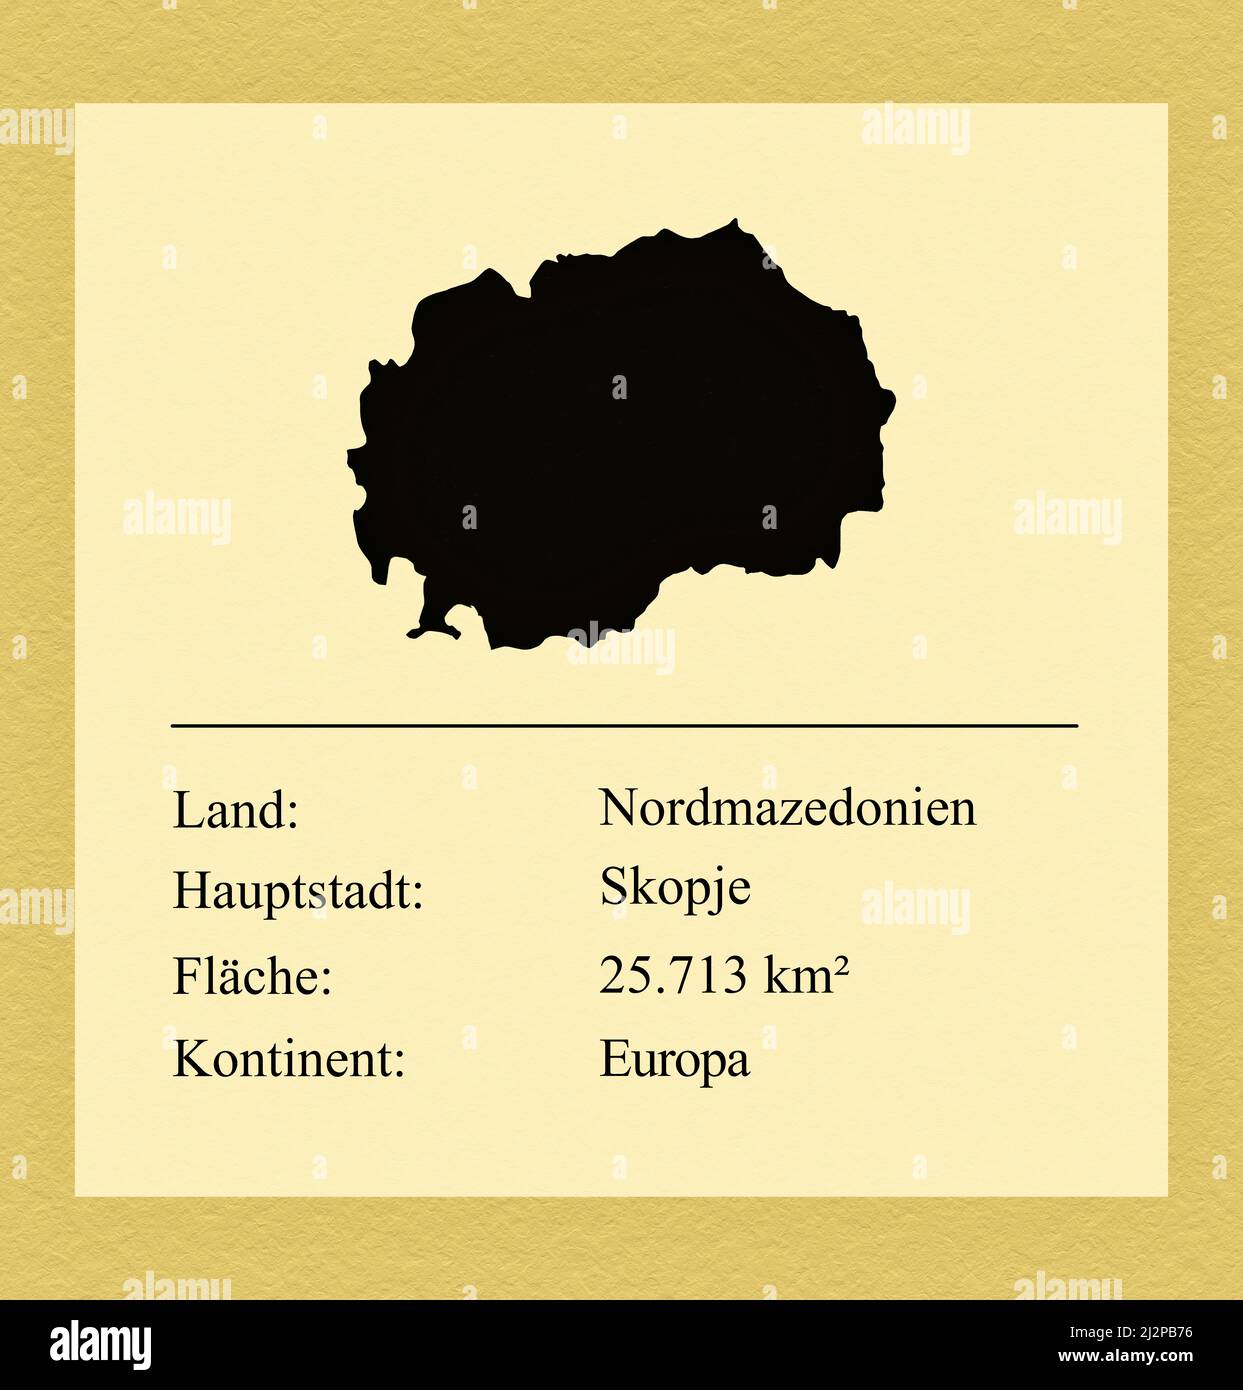 Umrisse des Landes Nordmazedonien, darunter ein kleiner Steckbrief mit Ländernamen, Hauptstadt, Fläche und Kontinent Foto Stock